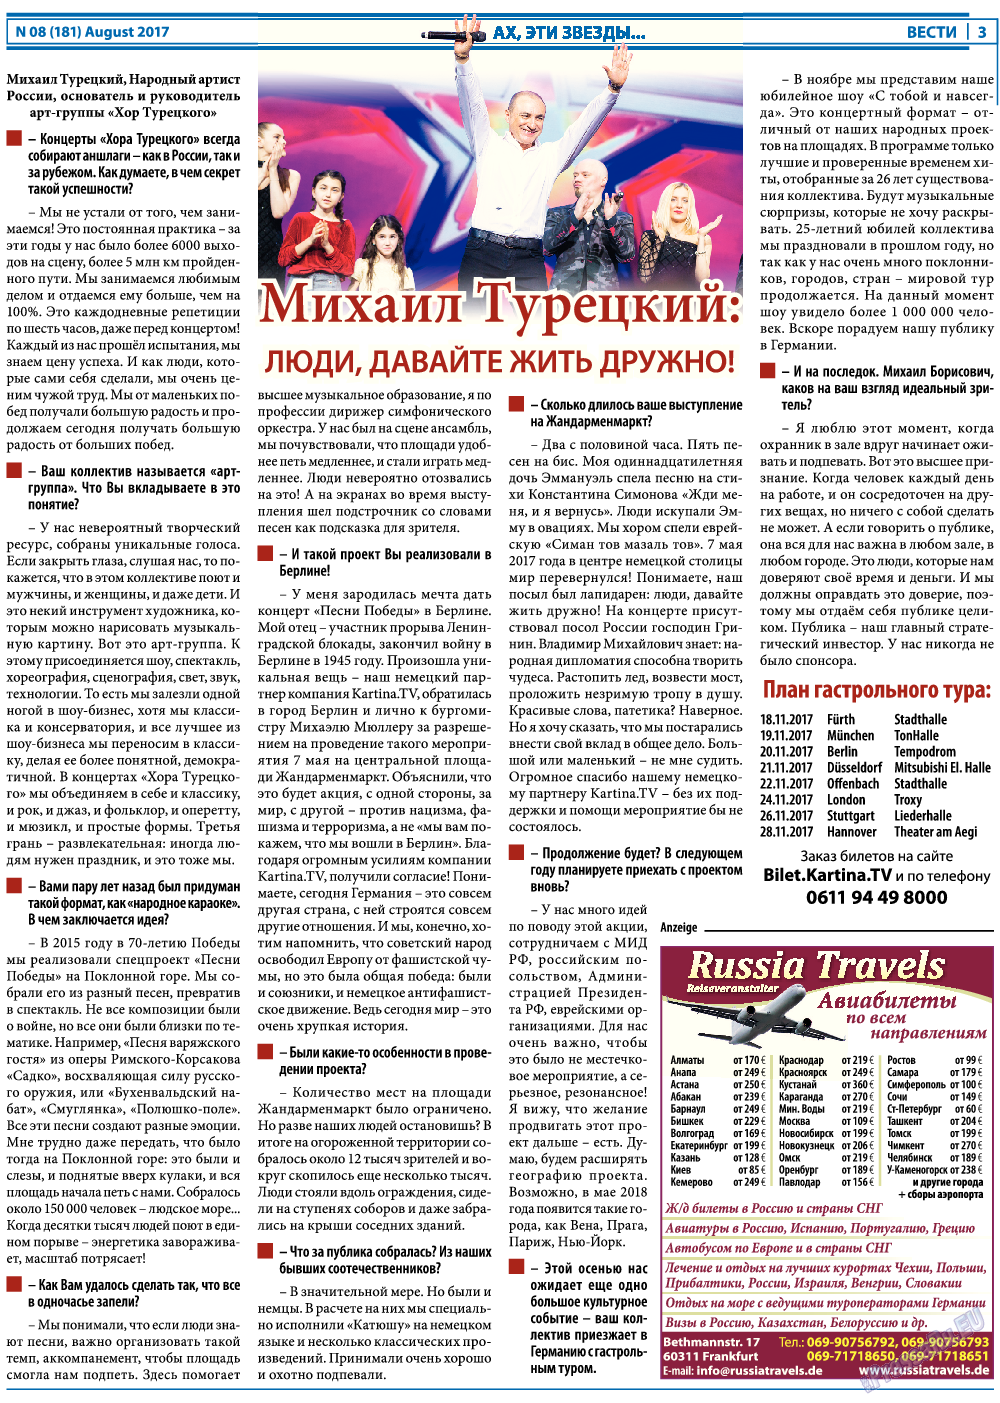 Вести, газета. 2017 №8 стр.3